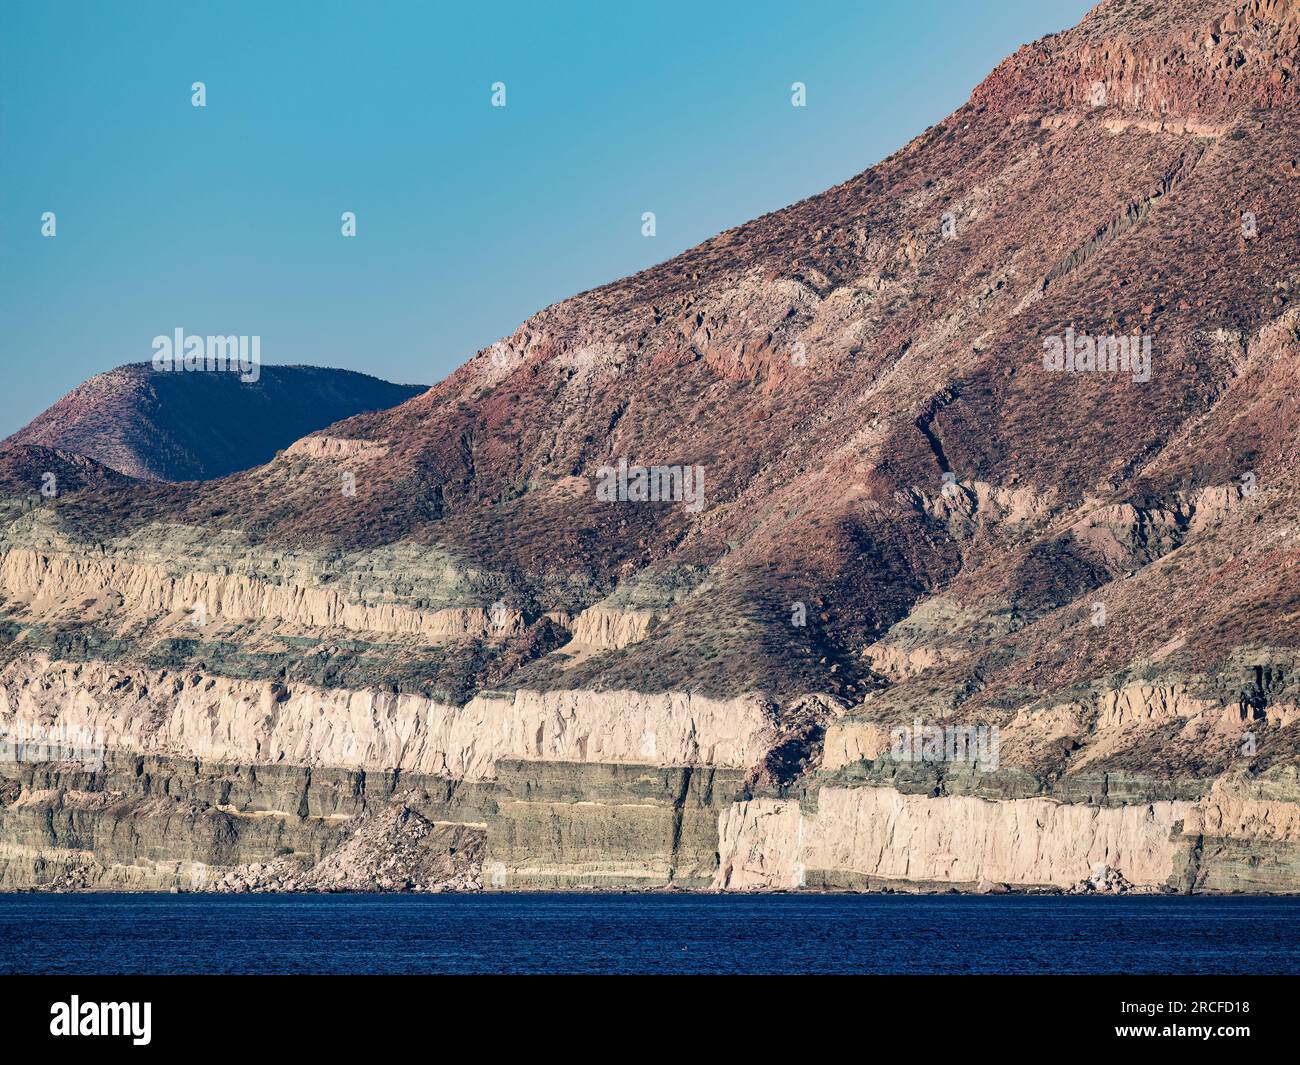 La penisola di Baja di fronte all'Isla San Jose, Baja California Sur, Messico. Foto Stock